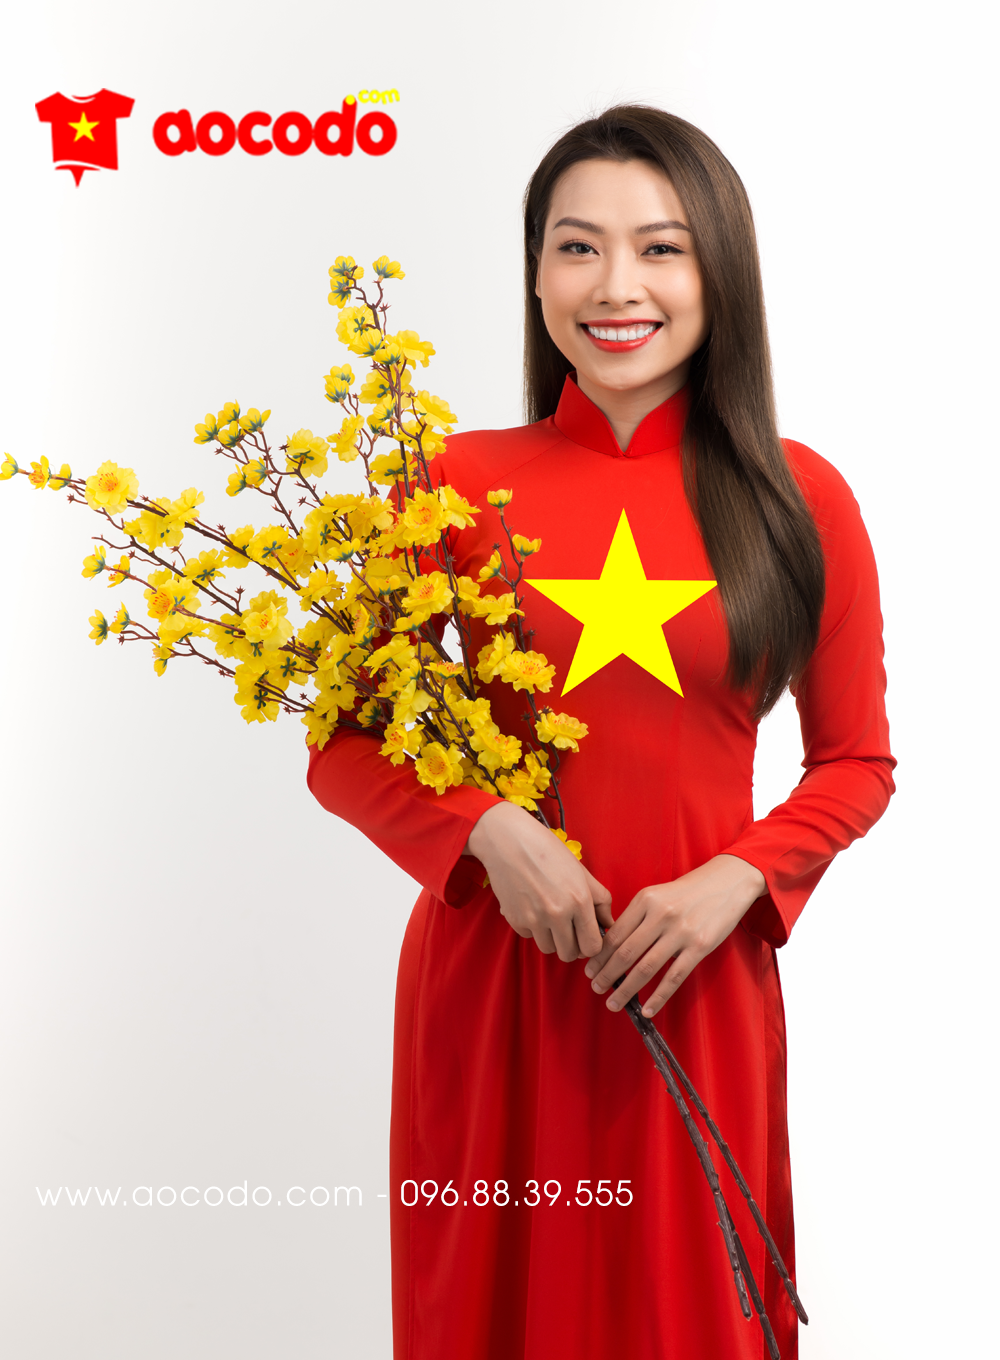 Áo dài cờ đỏ sao vàng không chỉ đơn thuần là một trang phục truyền thống mà còn là một biểu tượng đặc trưng của sự đoàn kết cộng đồng người Việt. Với sự thay đổi và phát triển, áo dài cờ đỏ sao vàng ngày nay có nhiều kiểu dáng và phong cách khác nhau, đáp ứng nhu cầu của mọi đối tượng và giới tính. Xem hình ảnh này, bạn sẽ phát hiện ra sự đa dạng và tùy chọn phong phú cho chiếc áo dài cờ đỏ sao vàng của mình.